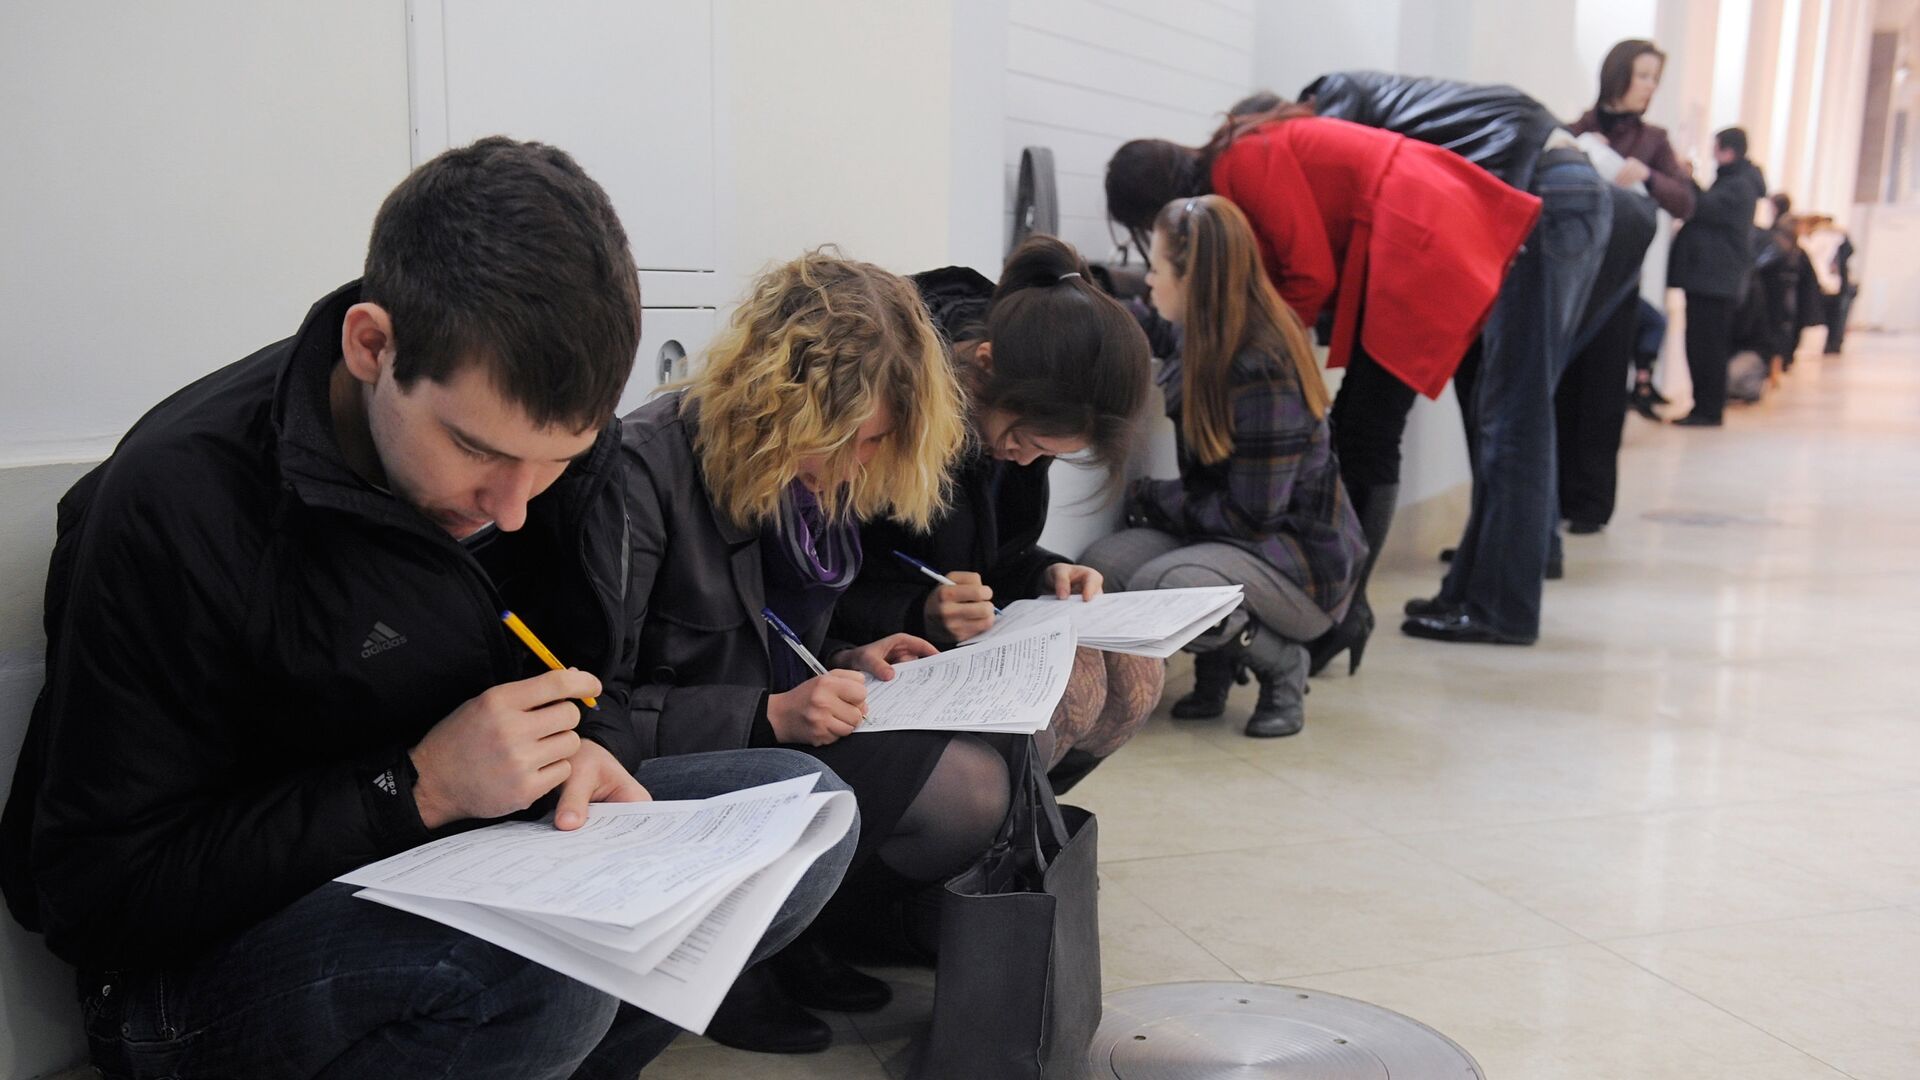 Правительство Армении обеспечивает компенсацию за обучение студентам из Нагорного Карабаха